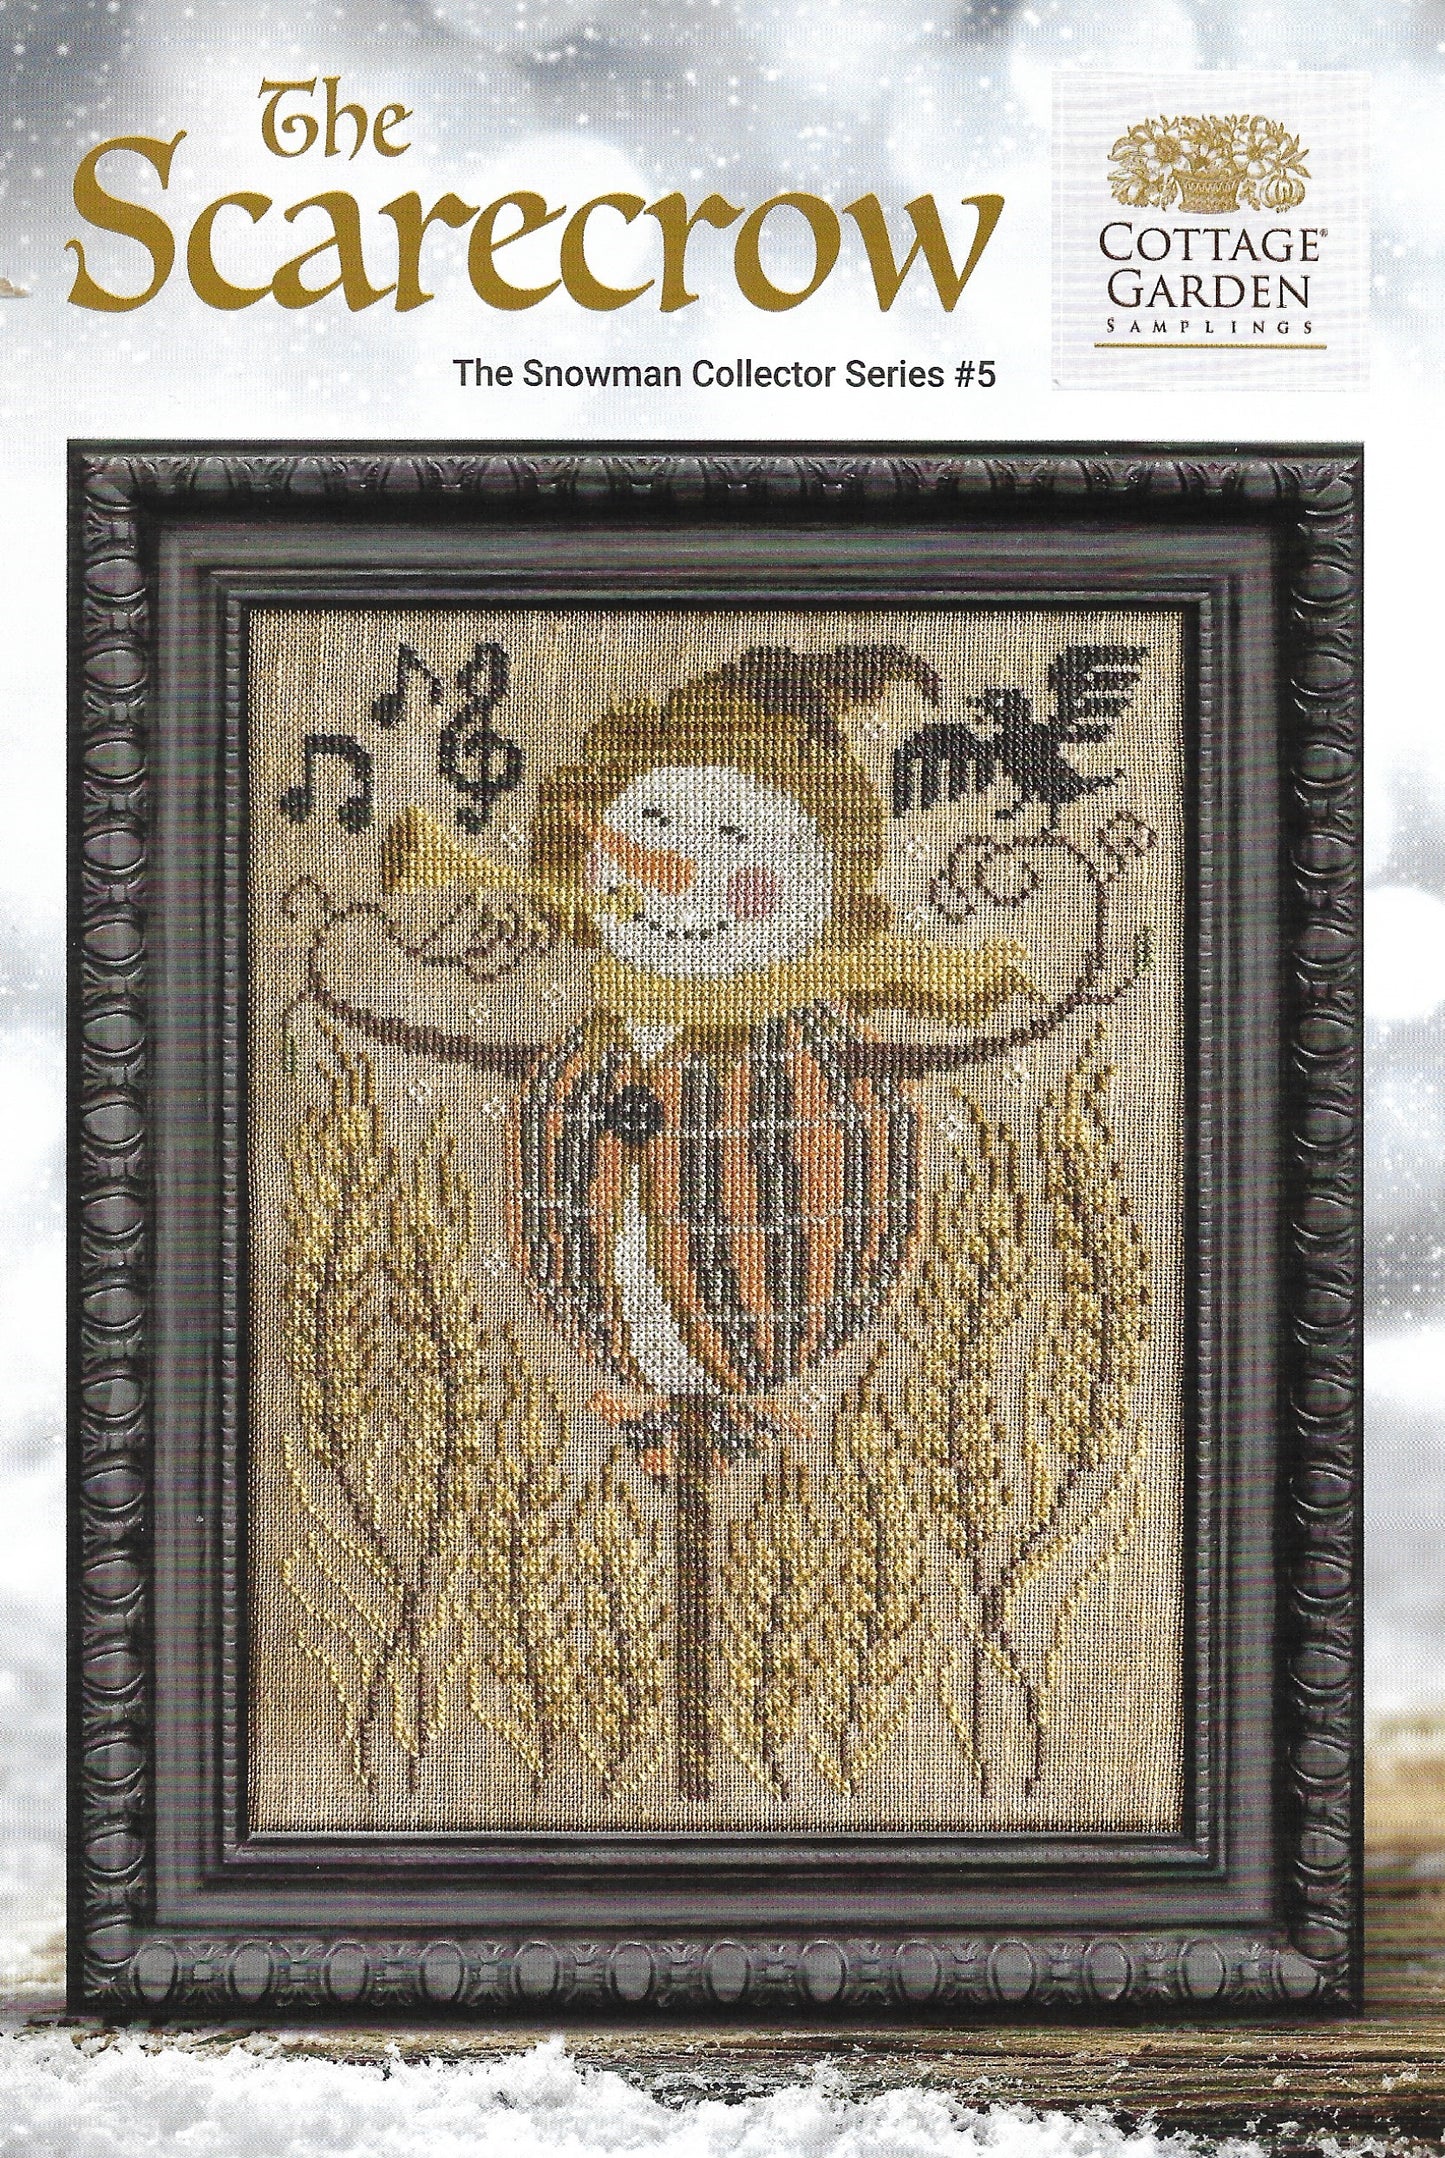 Cottage Garden Samplings - Snowman Collector - The Scarecrow